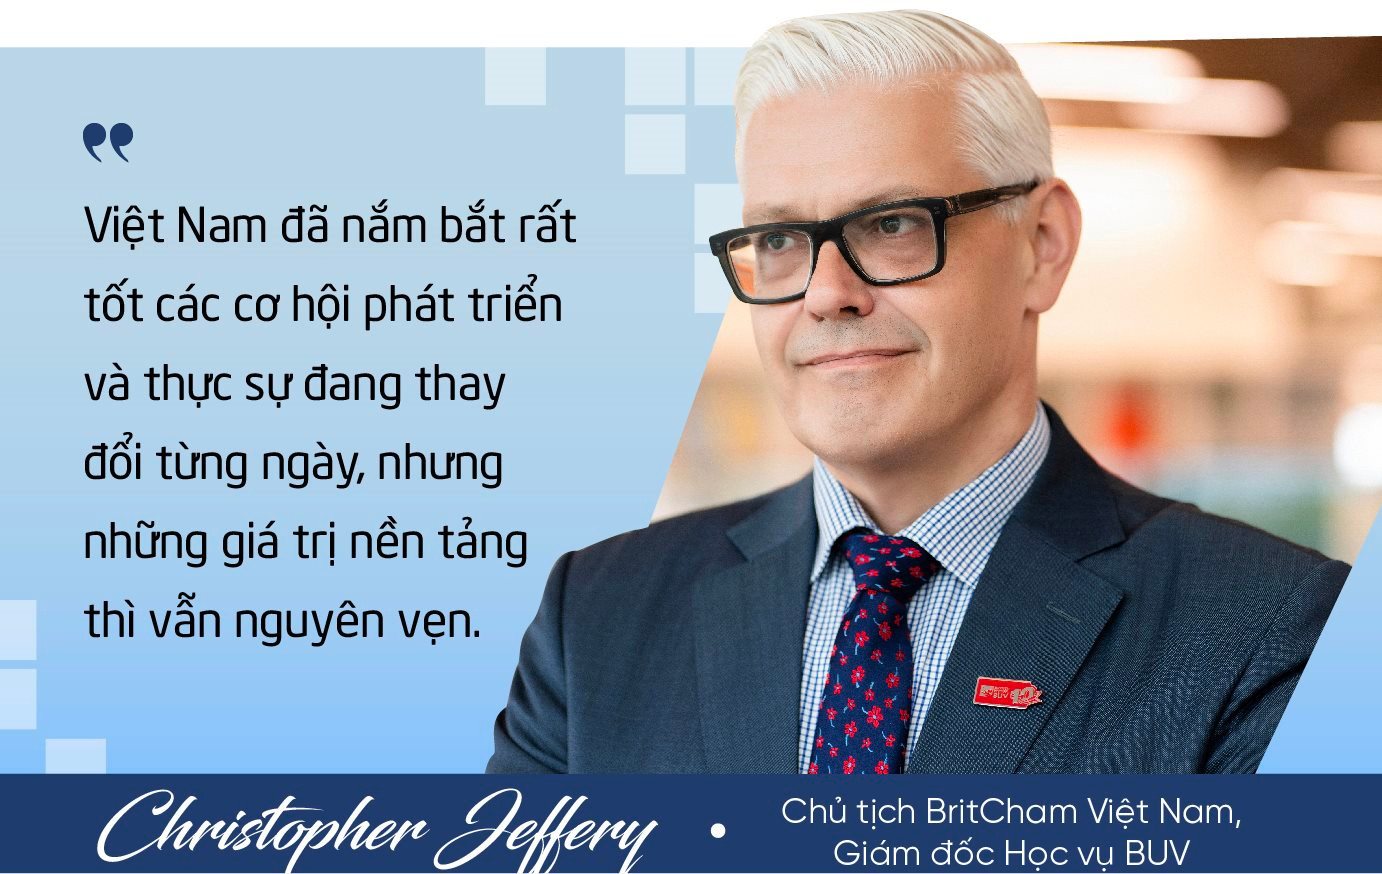 Chủ tịch BritCham từ bỏ ngôi trường top 10 thế giới đến Việt Nam ‘xây lại từ đầu’: Từ ‘vùng đất lạ’, Việt Nam đang vươn mình thành người chơi chính trong thu hút FDI toàn cầu - Ảnh 3.